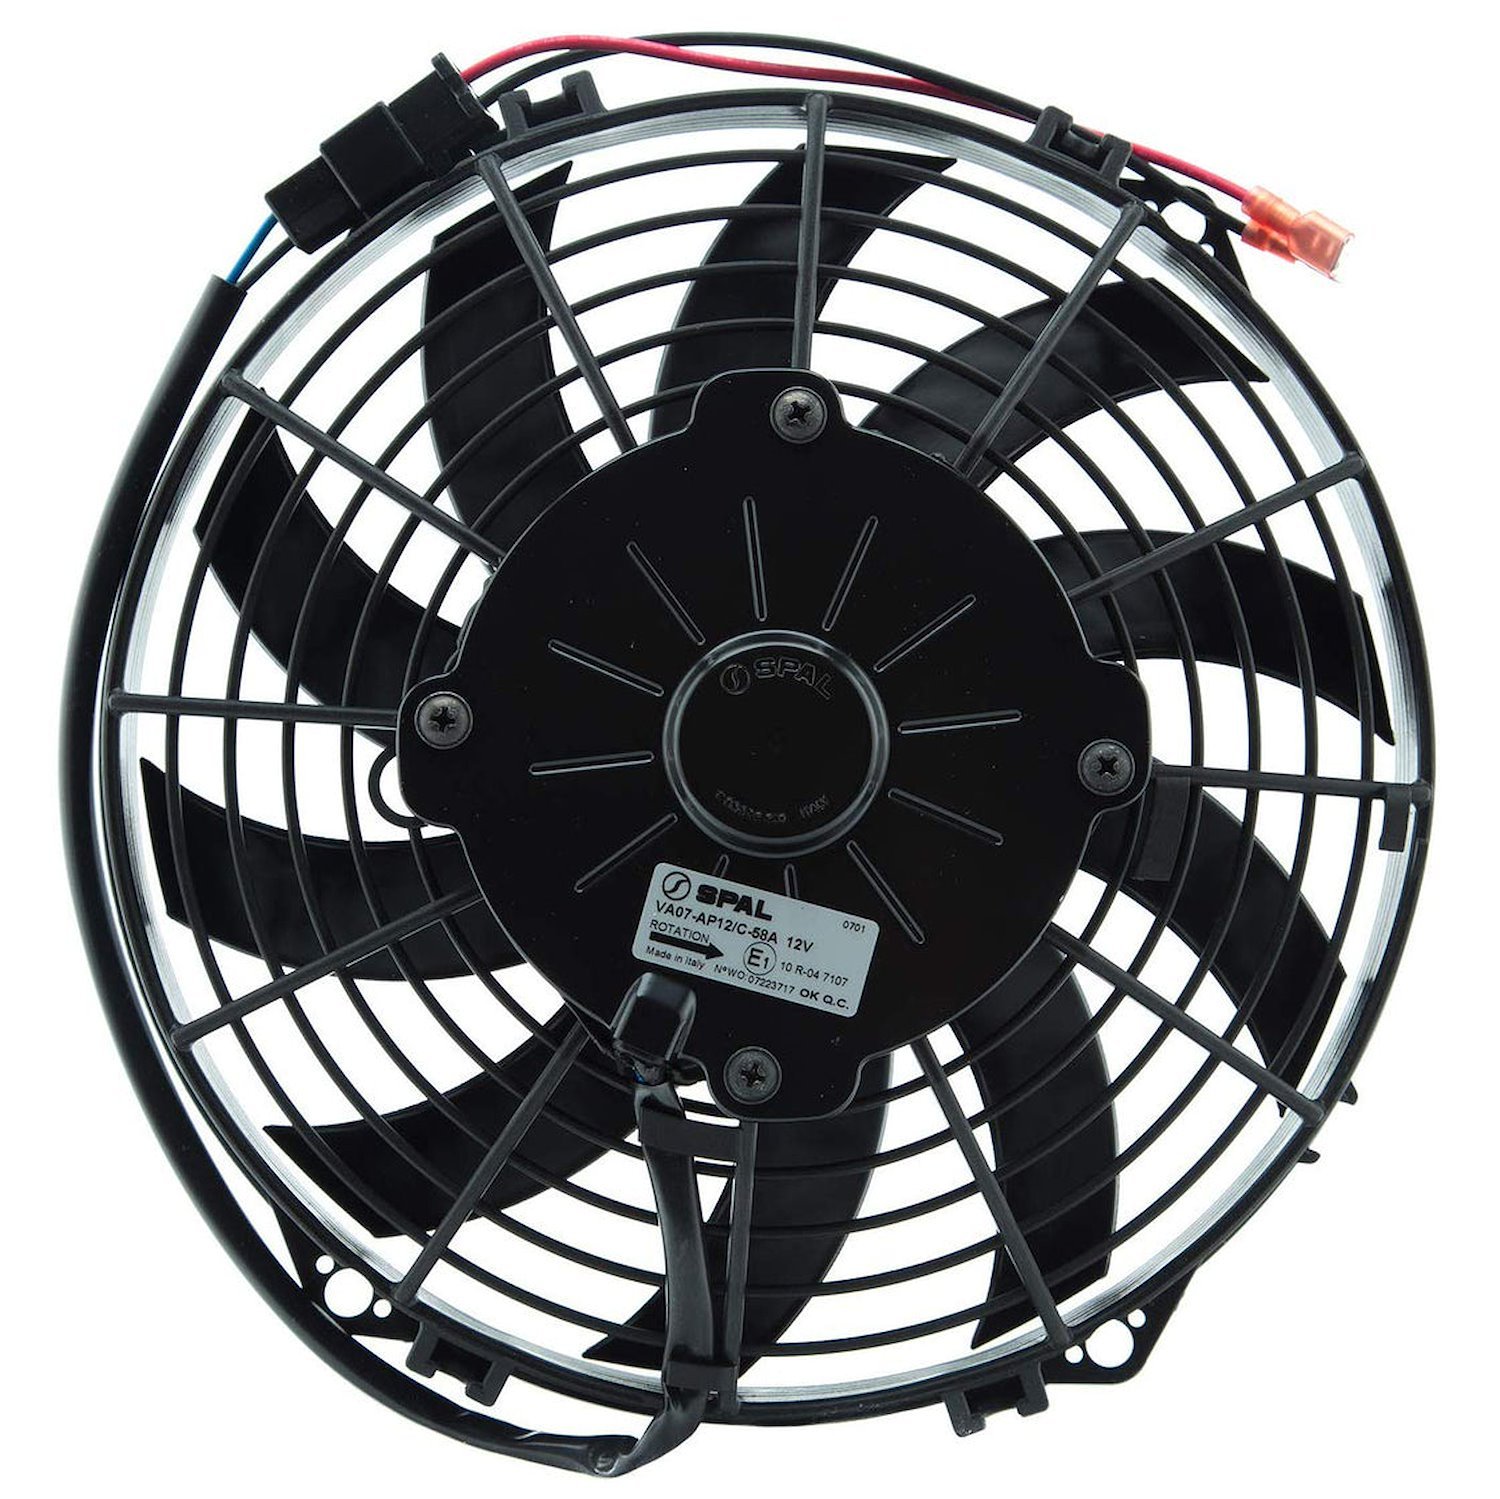 FAN30100452 Spal Fan, 9.0 in. Low-Profile Fan